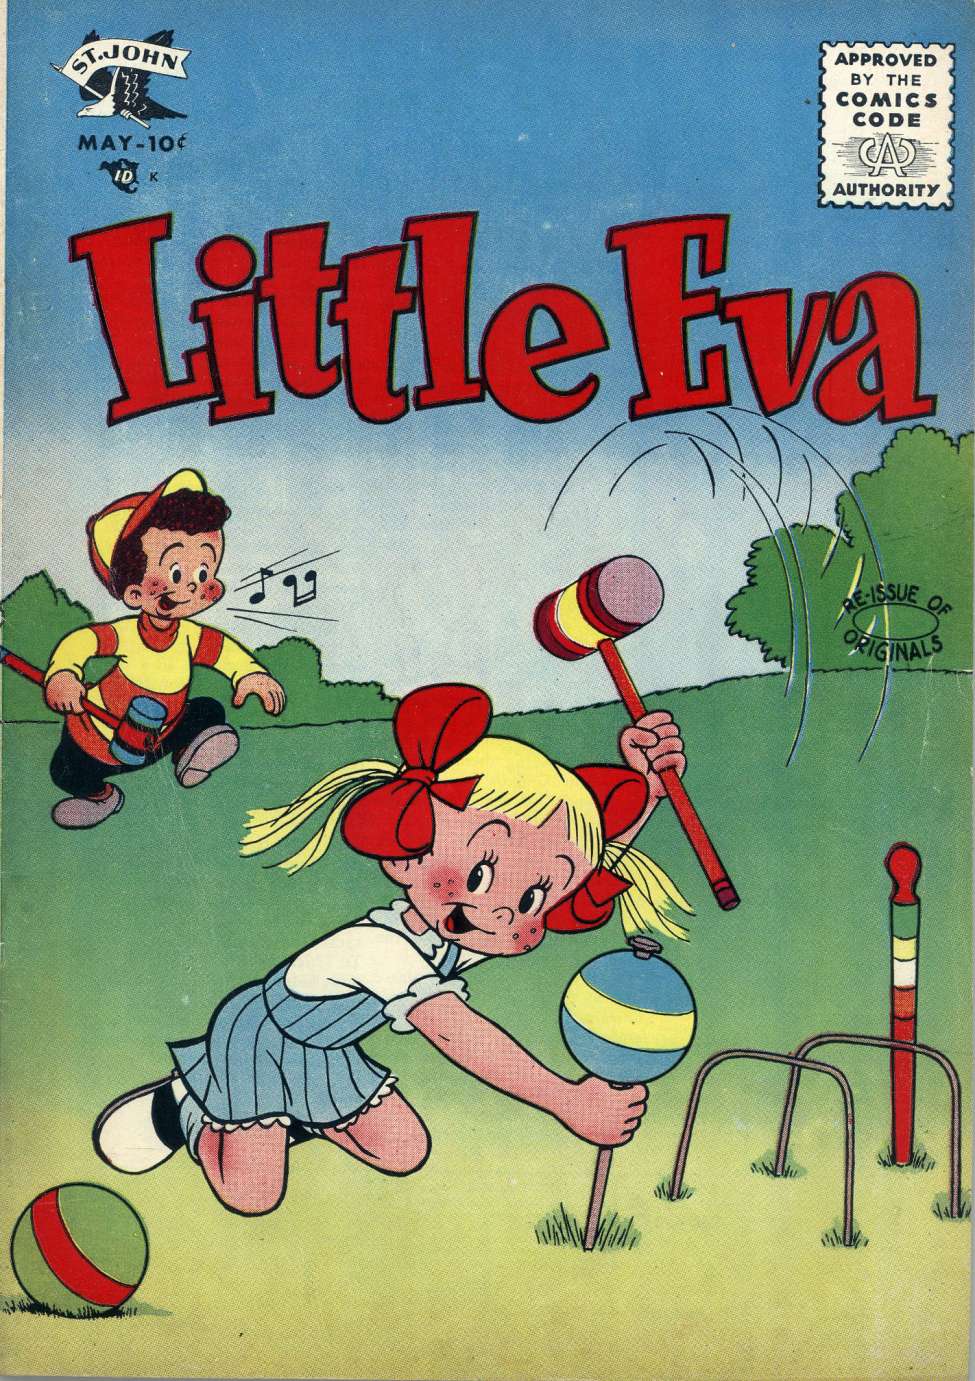 Little Eva 25 (St. John) - Comic Book Plus